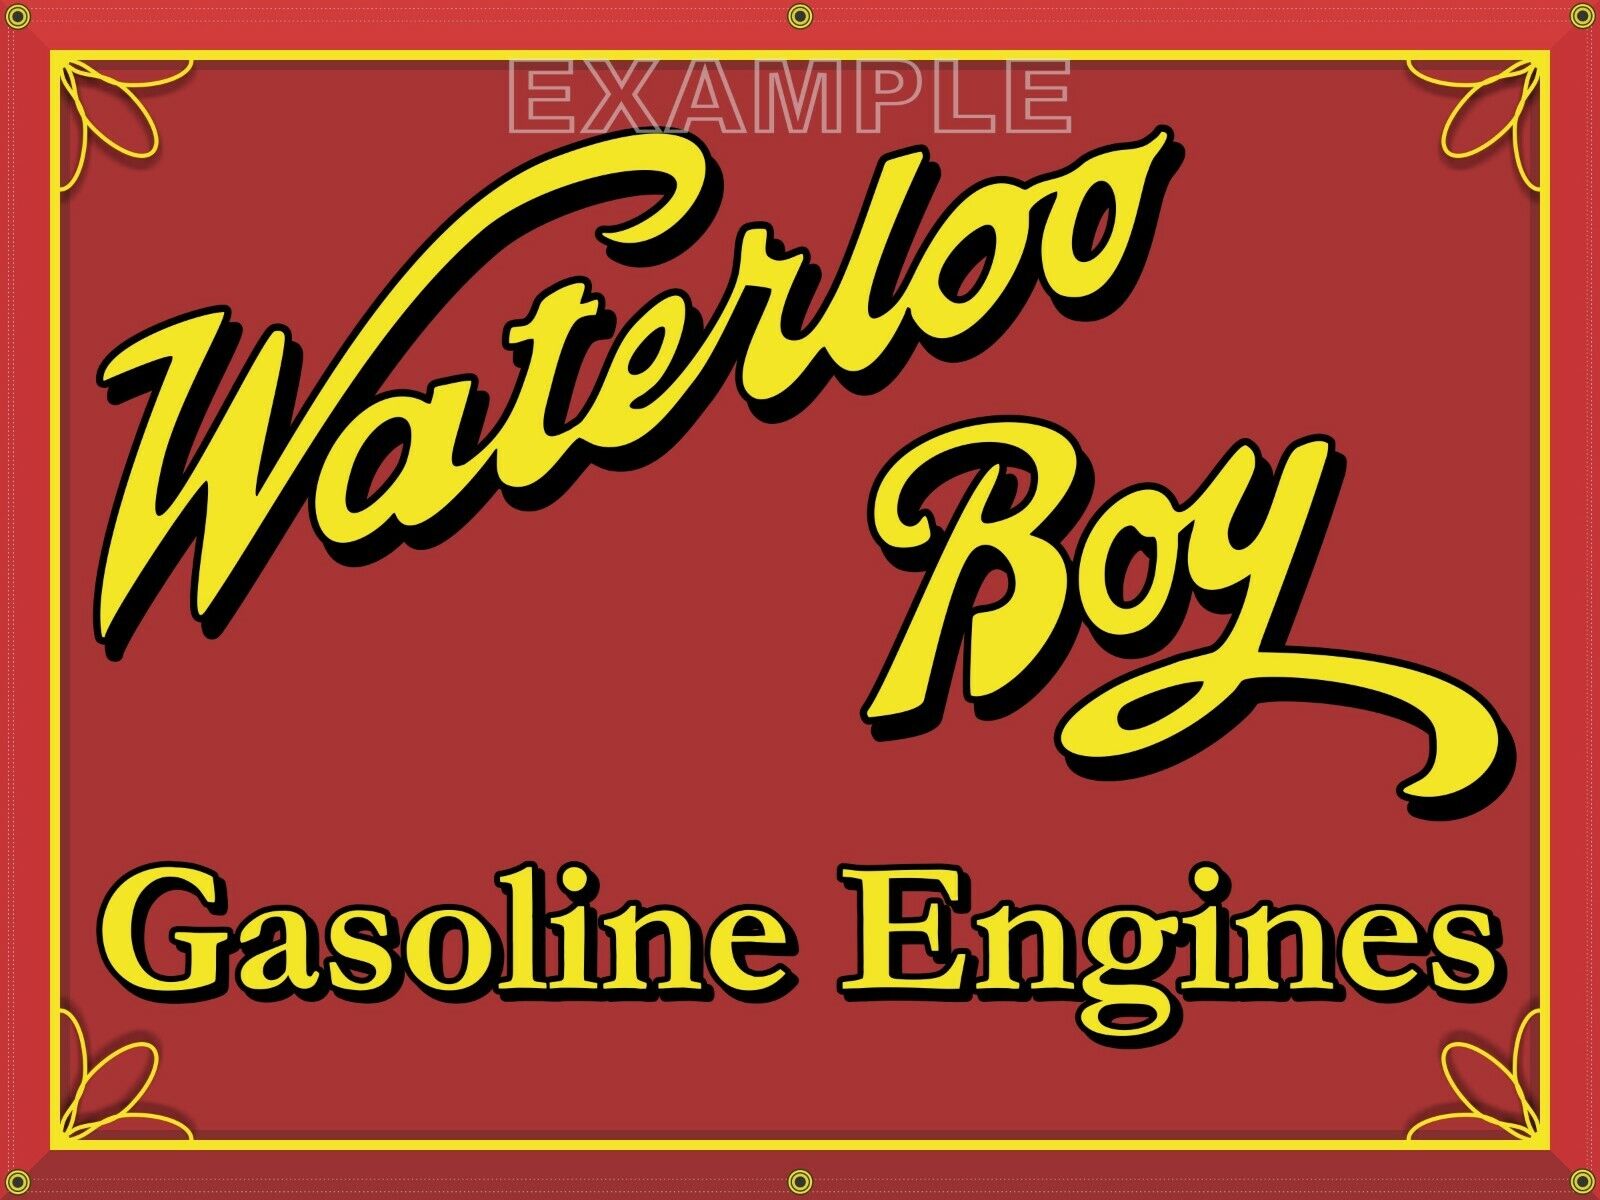 WATERLOO BOY GASOLINE ENGINES VINTAGE SIGN REMAKE BANNER GARAGE ART SIZE CHOICES